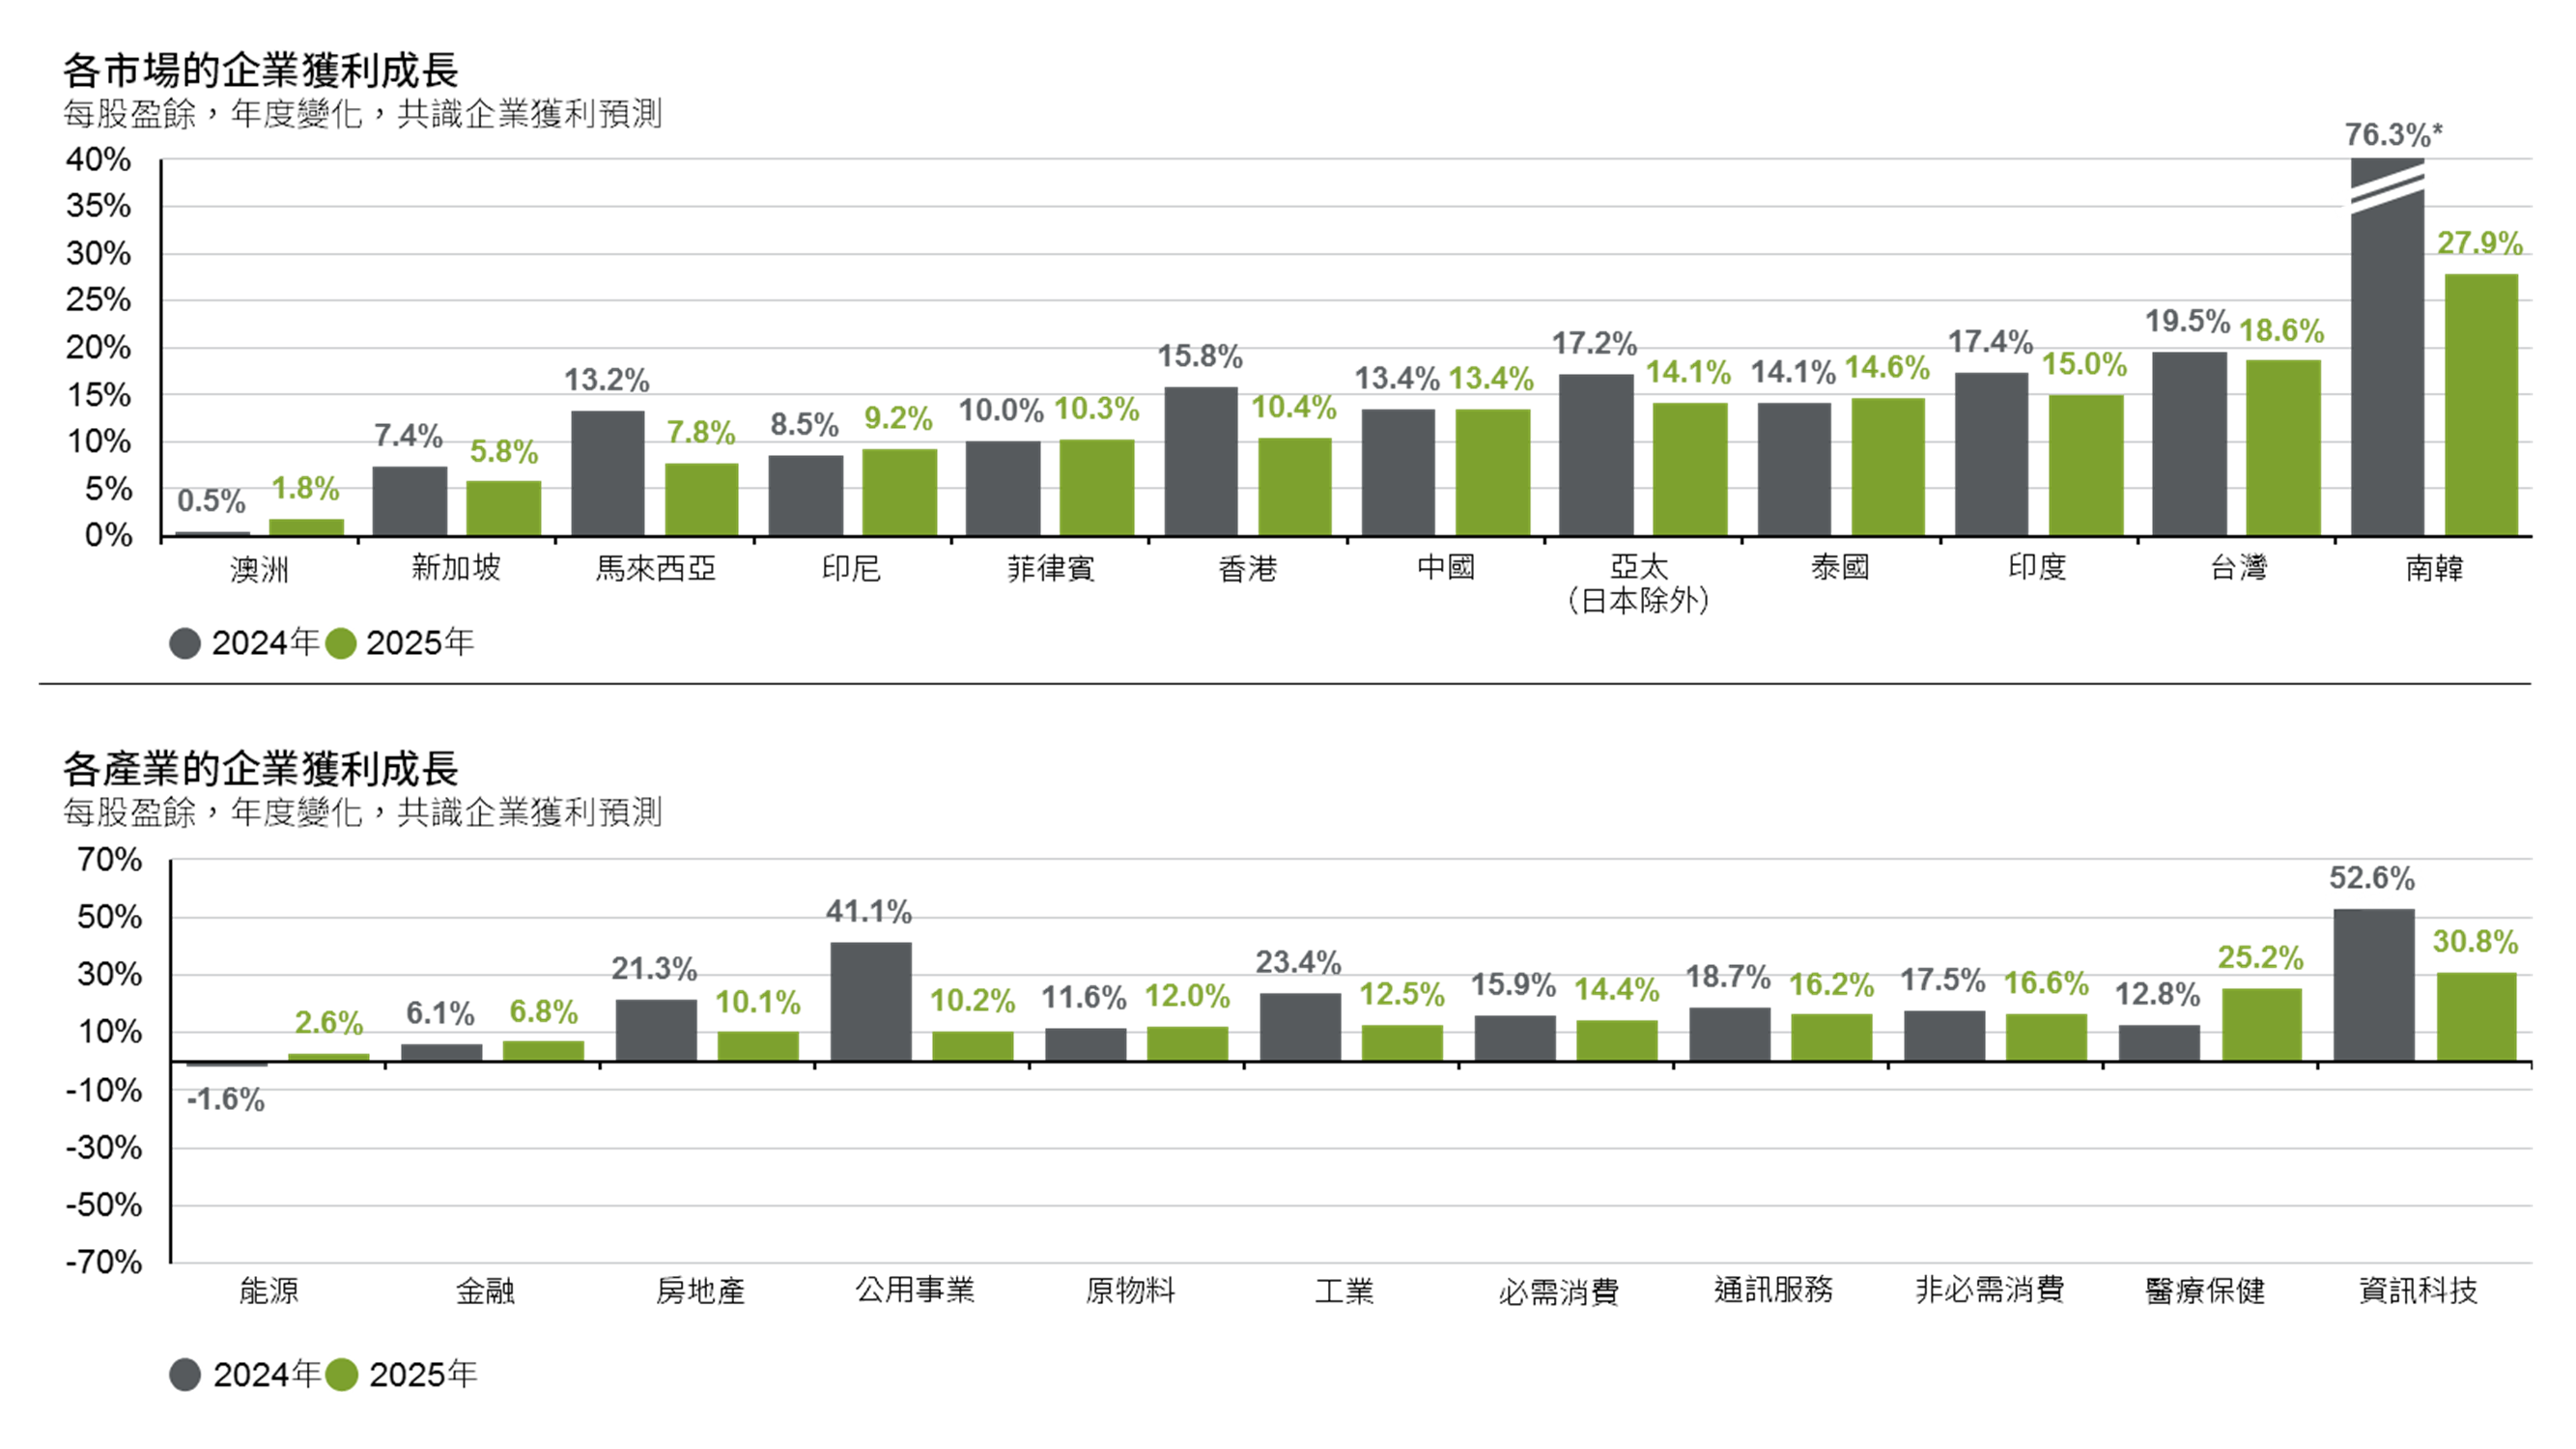 亞太（日本除外）股票：按營收來源劃分的企業獲利趨勢及出口